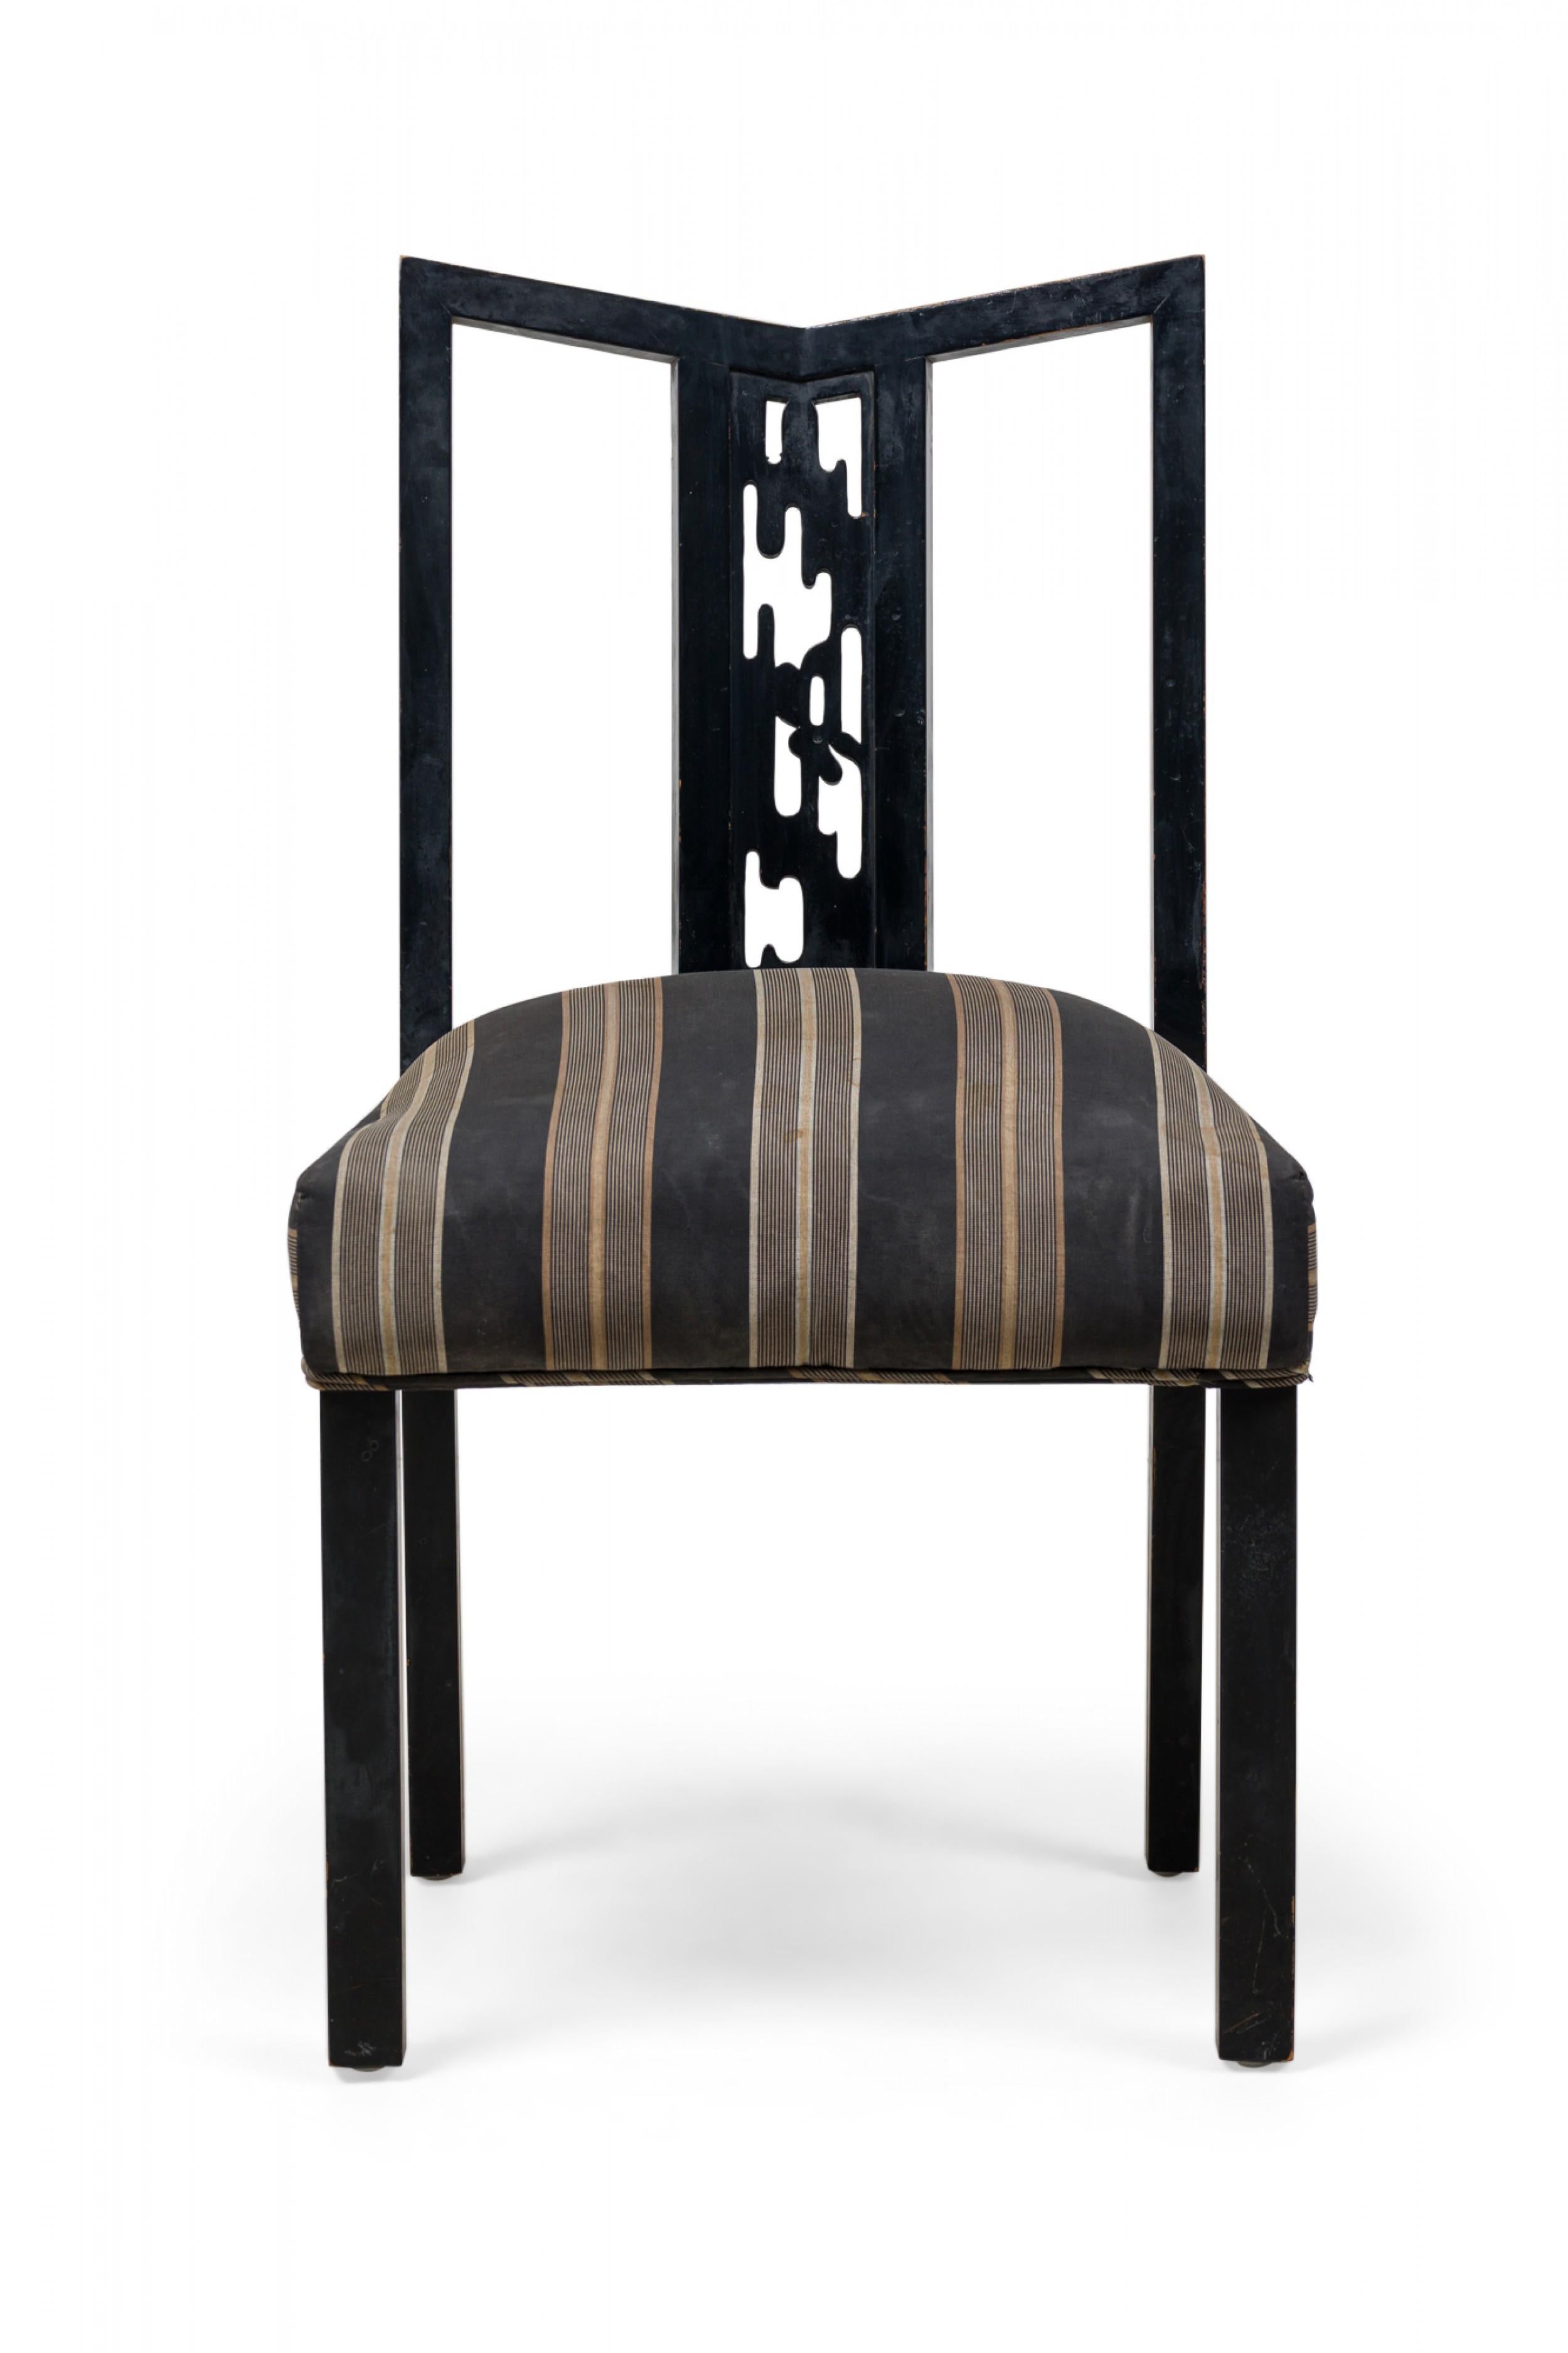 ENSEMBLE de 4 chaises de salle à manger / chaises d'appoint américaines du milieu du siècle, avec une structure en bois laqué noir présentant des dossiers géométriques ajourés et des éclisses centrales sculptées en forme de découpe organique, et des